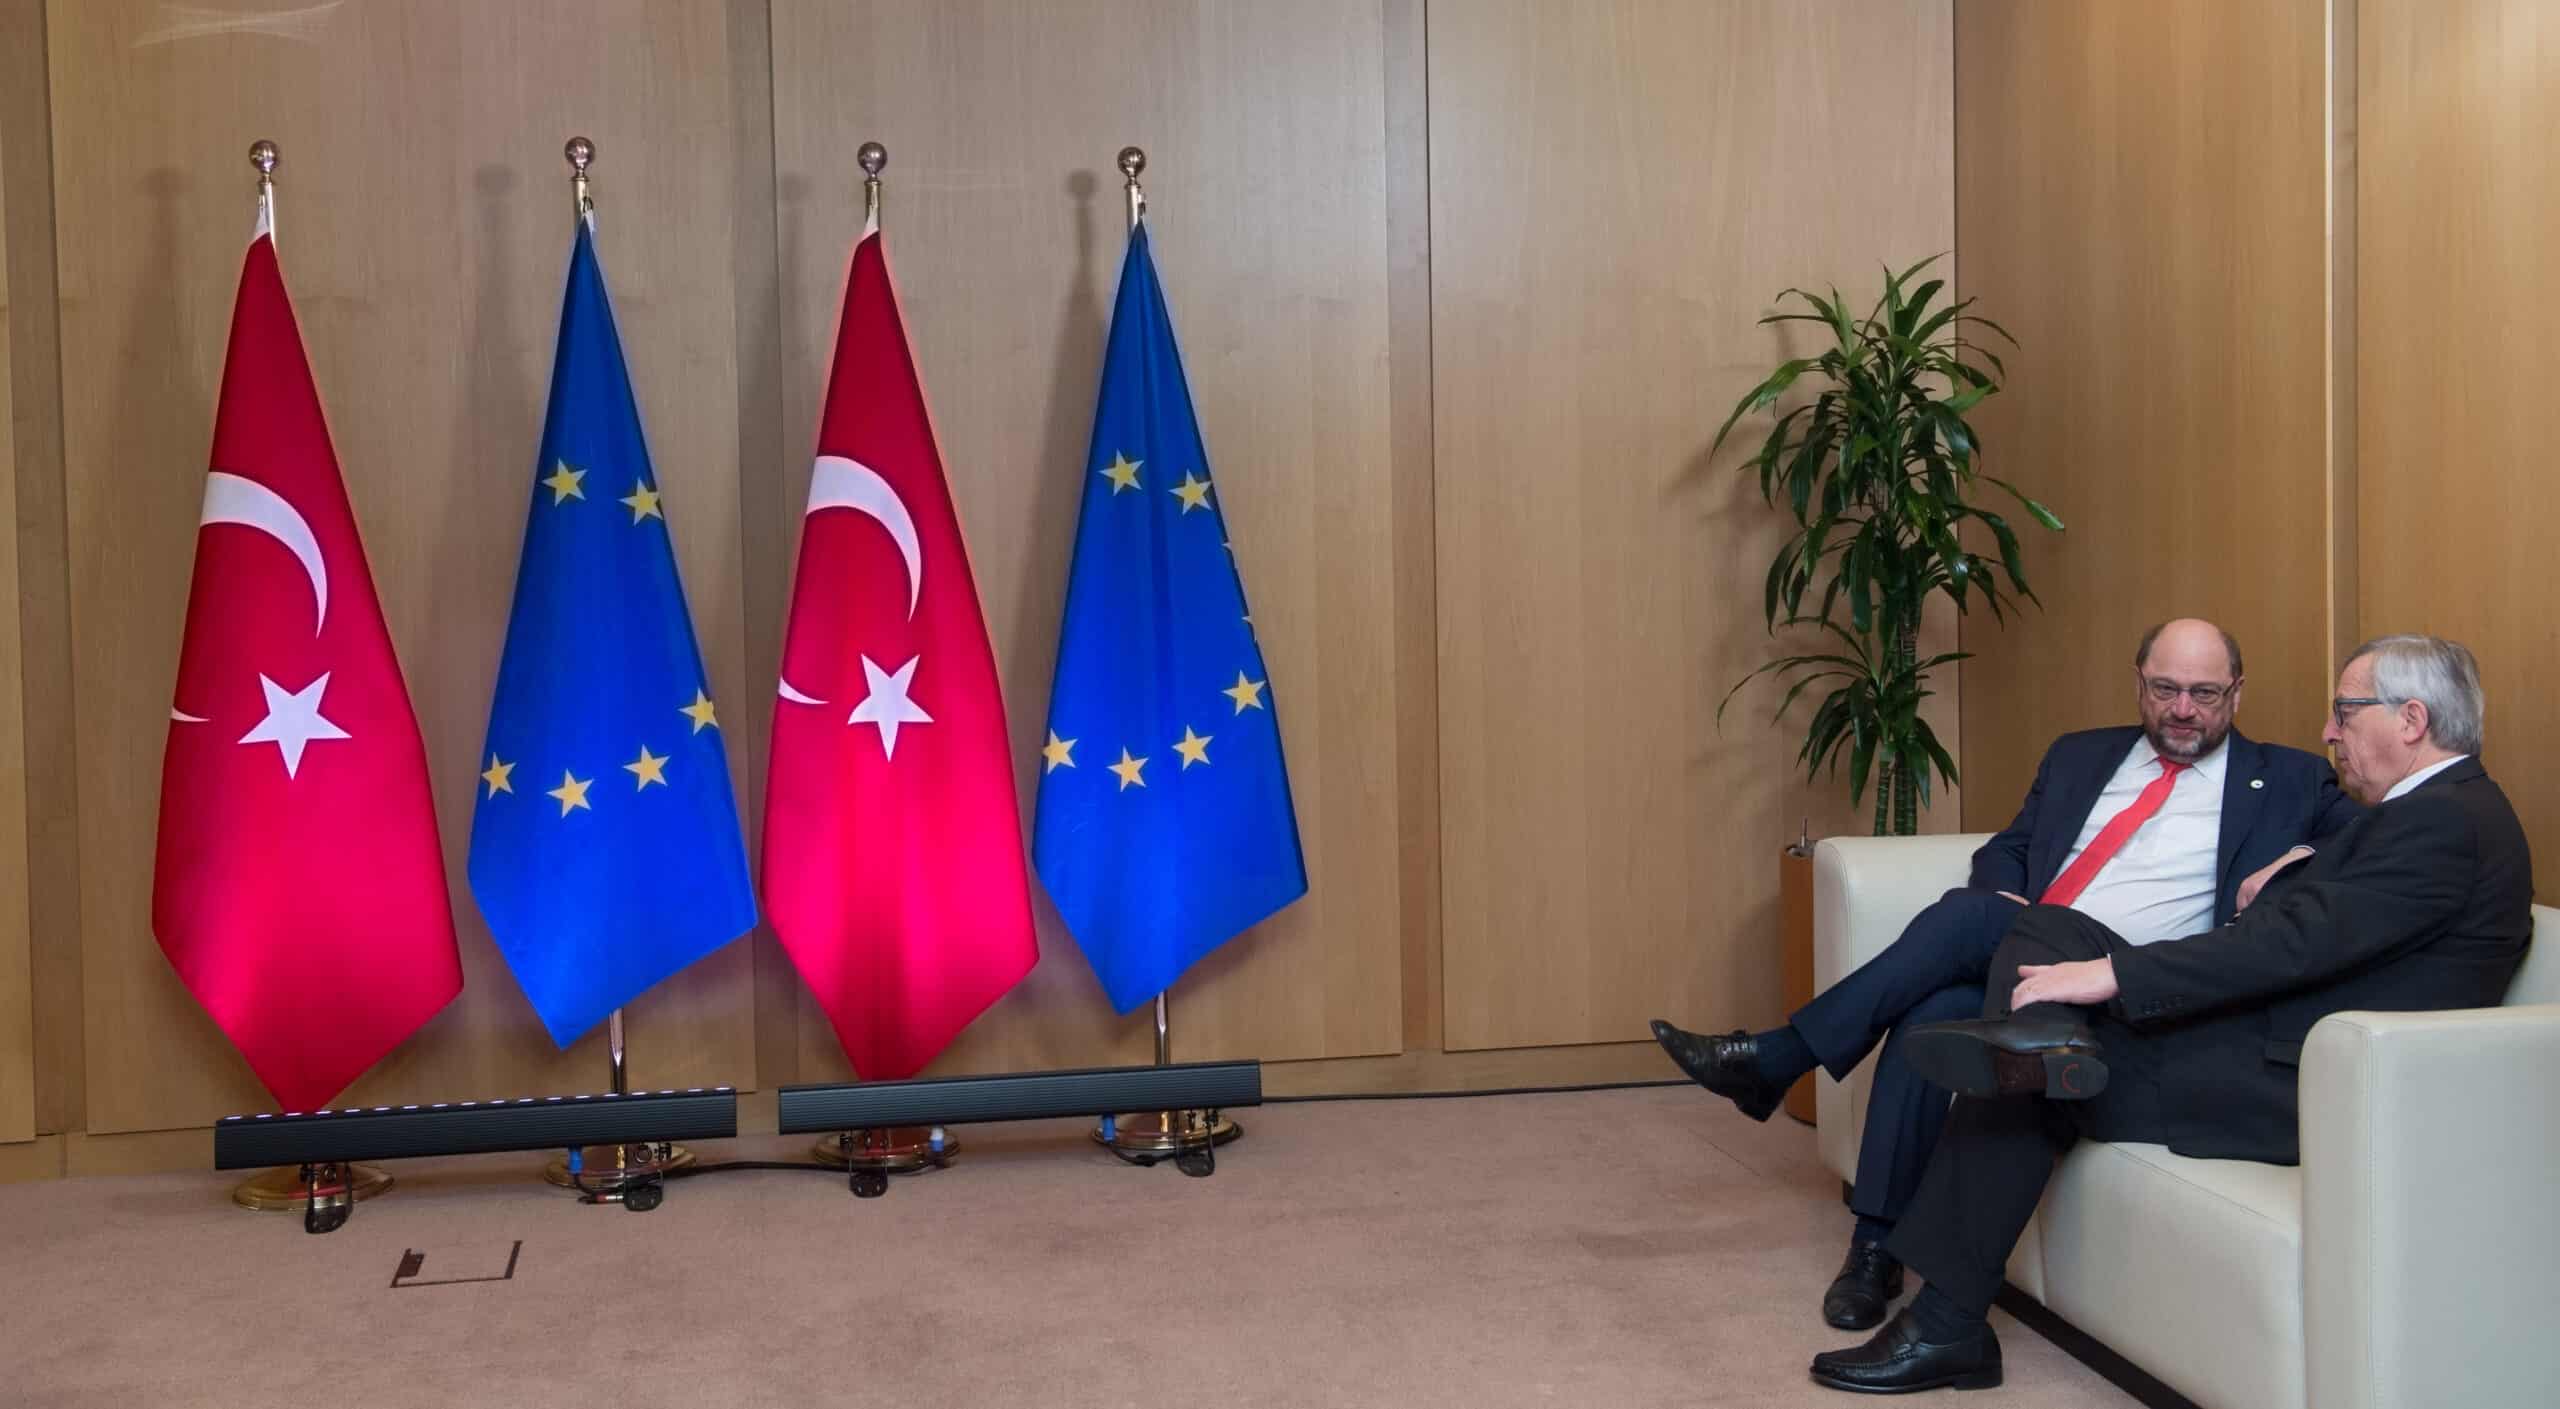 Přečtete si více ze článku Turecko a EU obnoví jednání o rozšíření celní unie, tvrdí Ankara